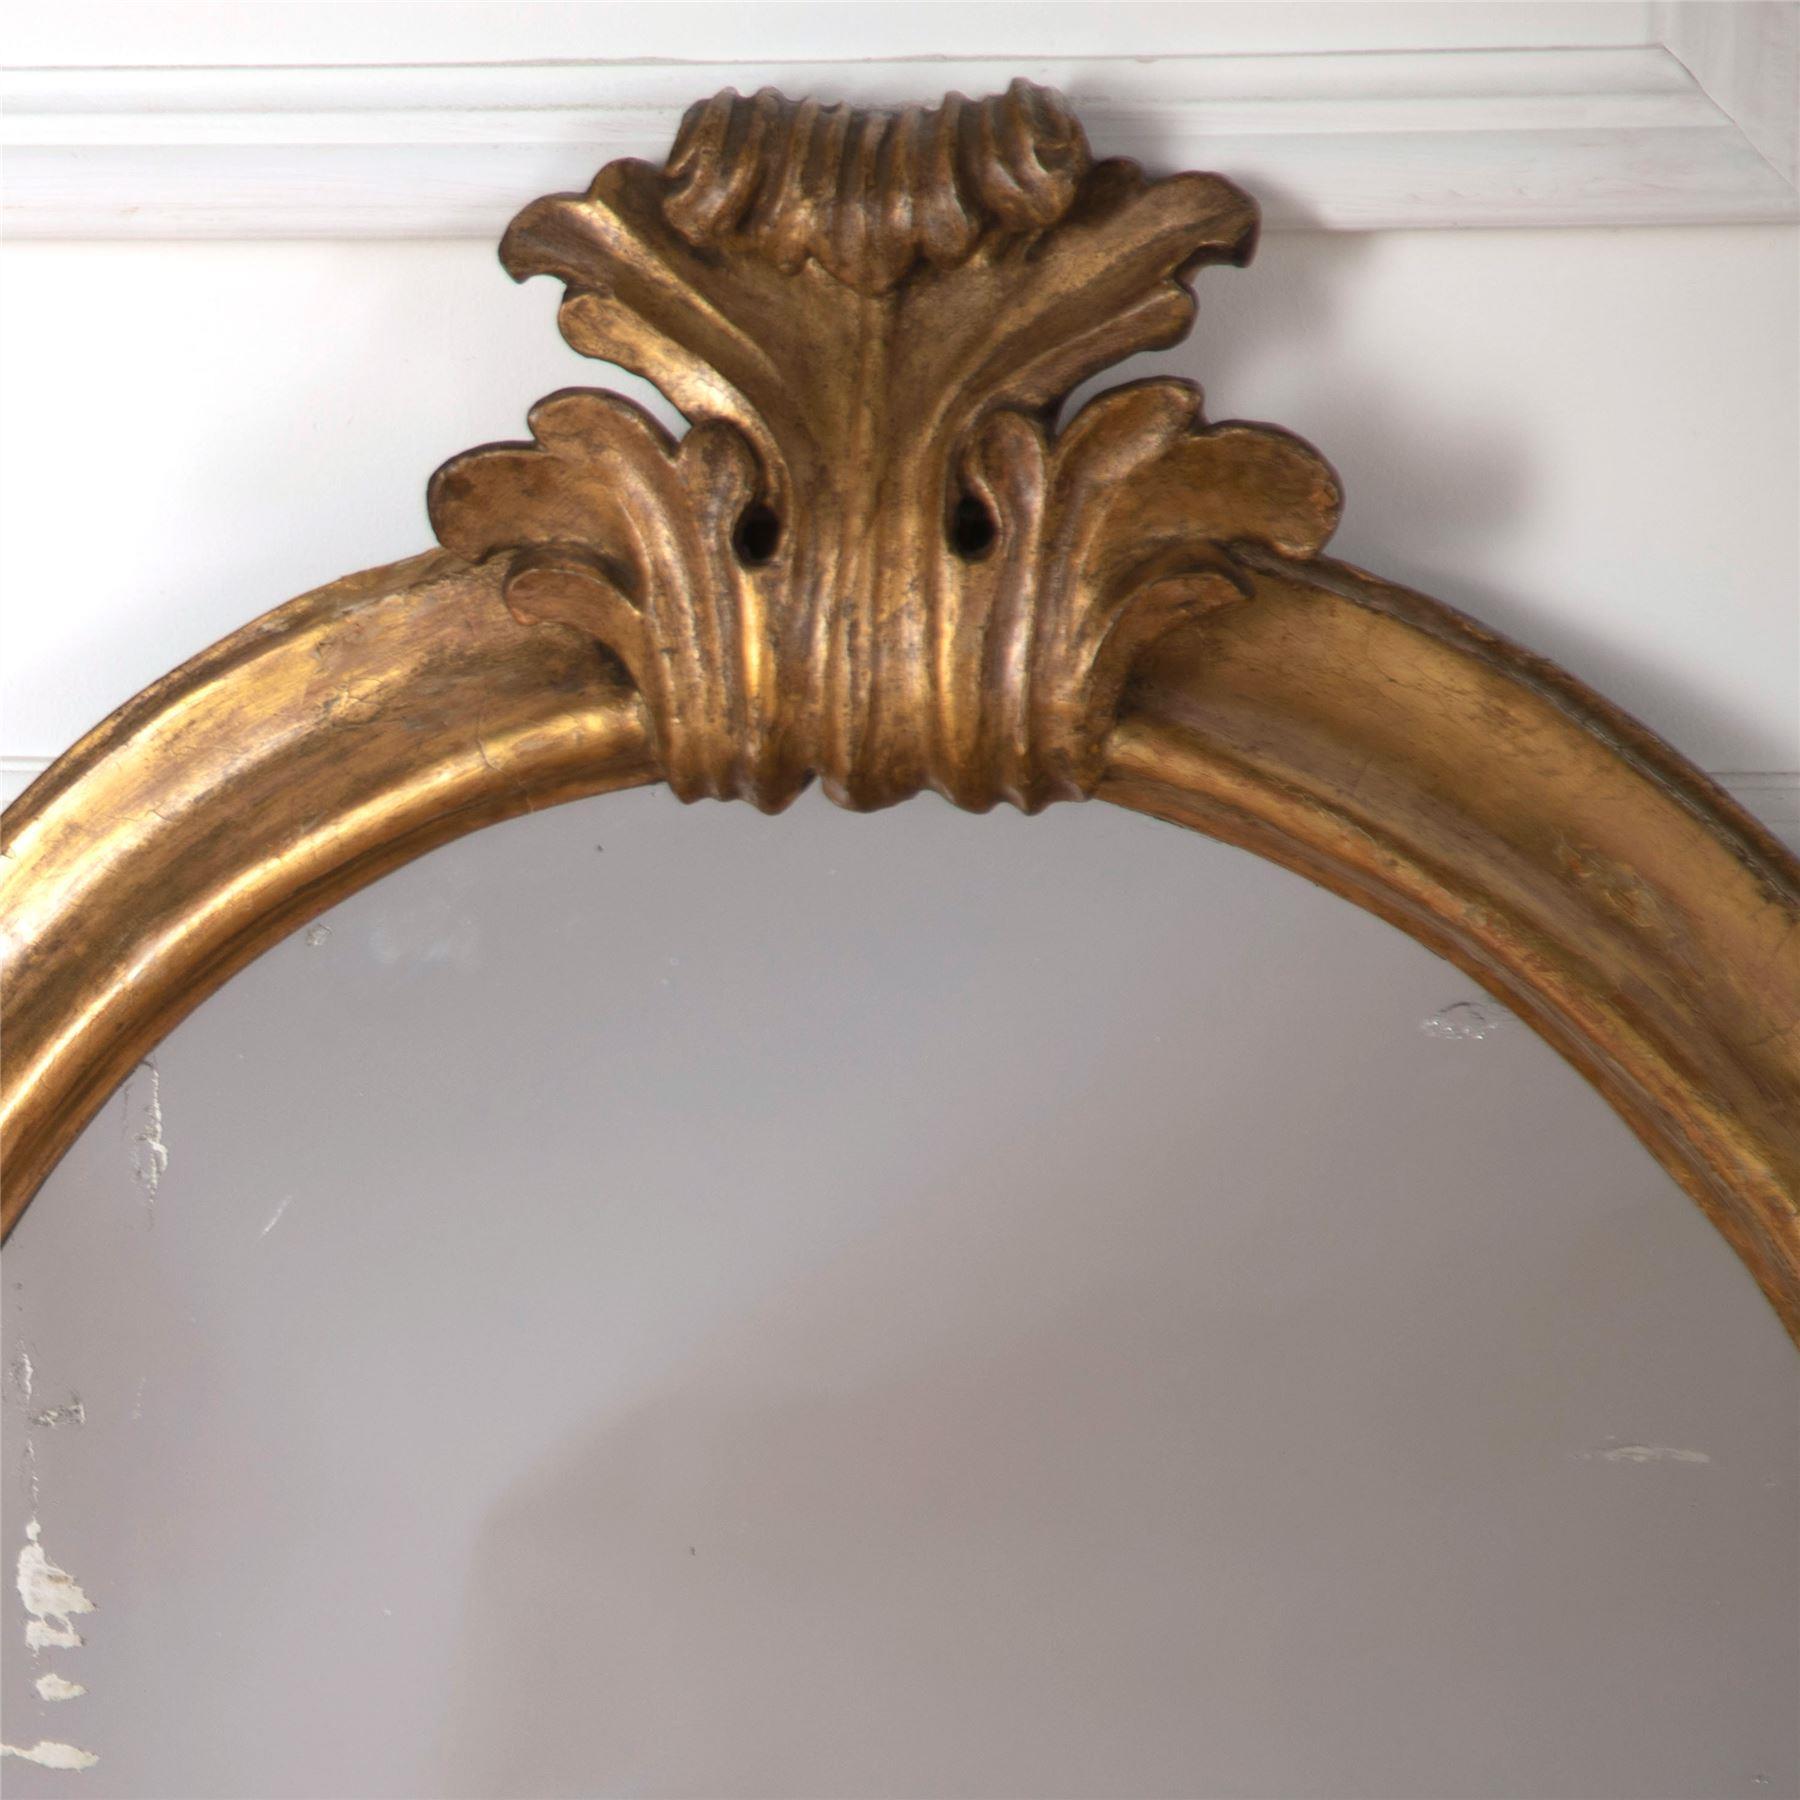 Une paire de miroirs muraux italiens du 19ème siècle, ovales et dorés, avec une belle crête centrale et des plaques originales.